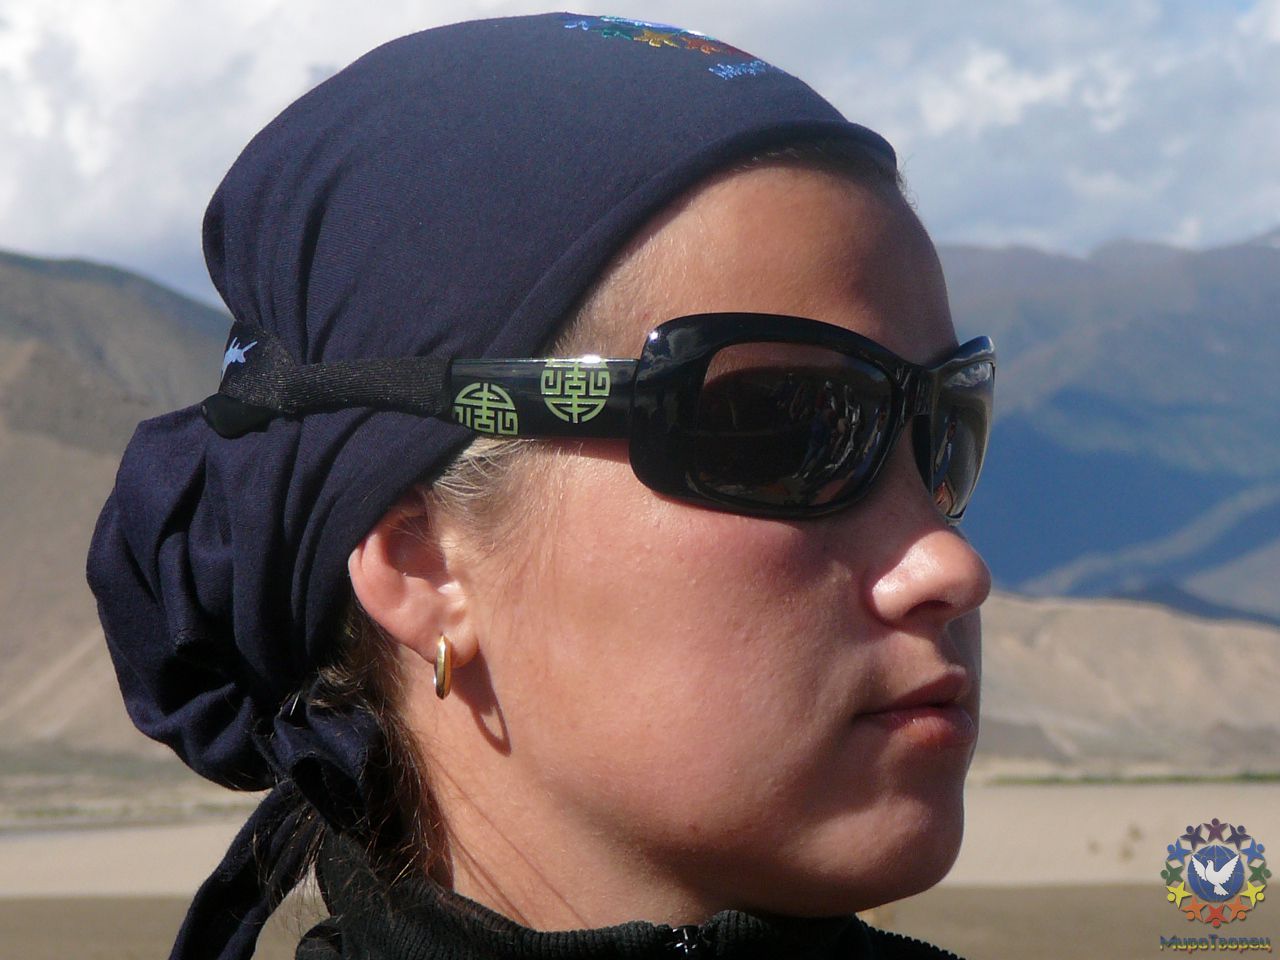 Наталья - Тибет 2006. Фотовоспоминание 5 лет спустя.